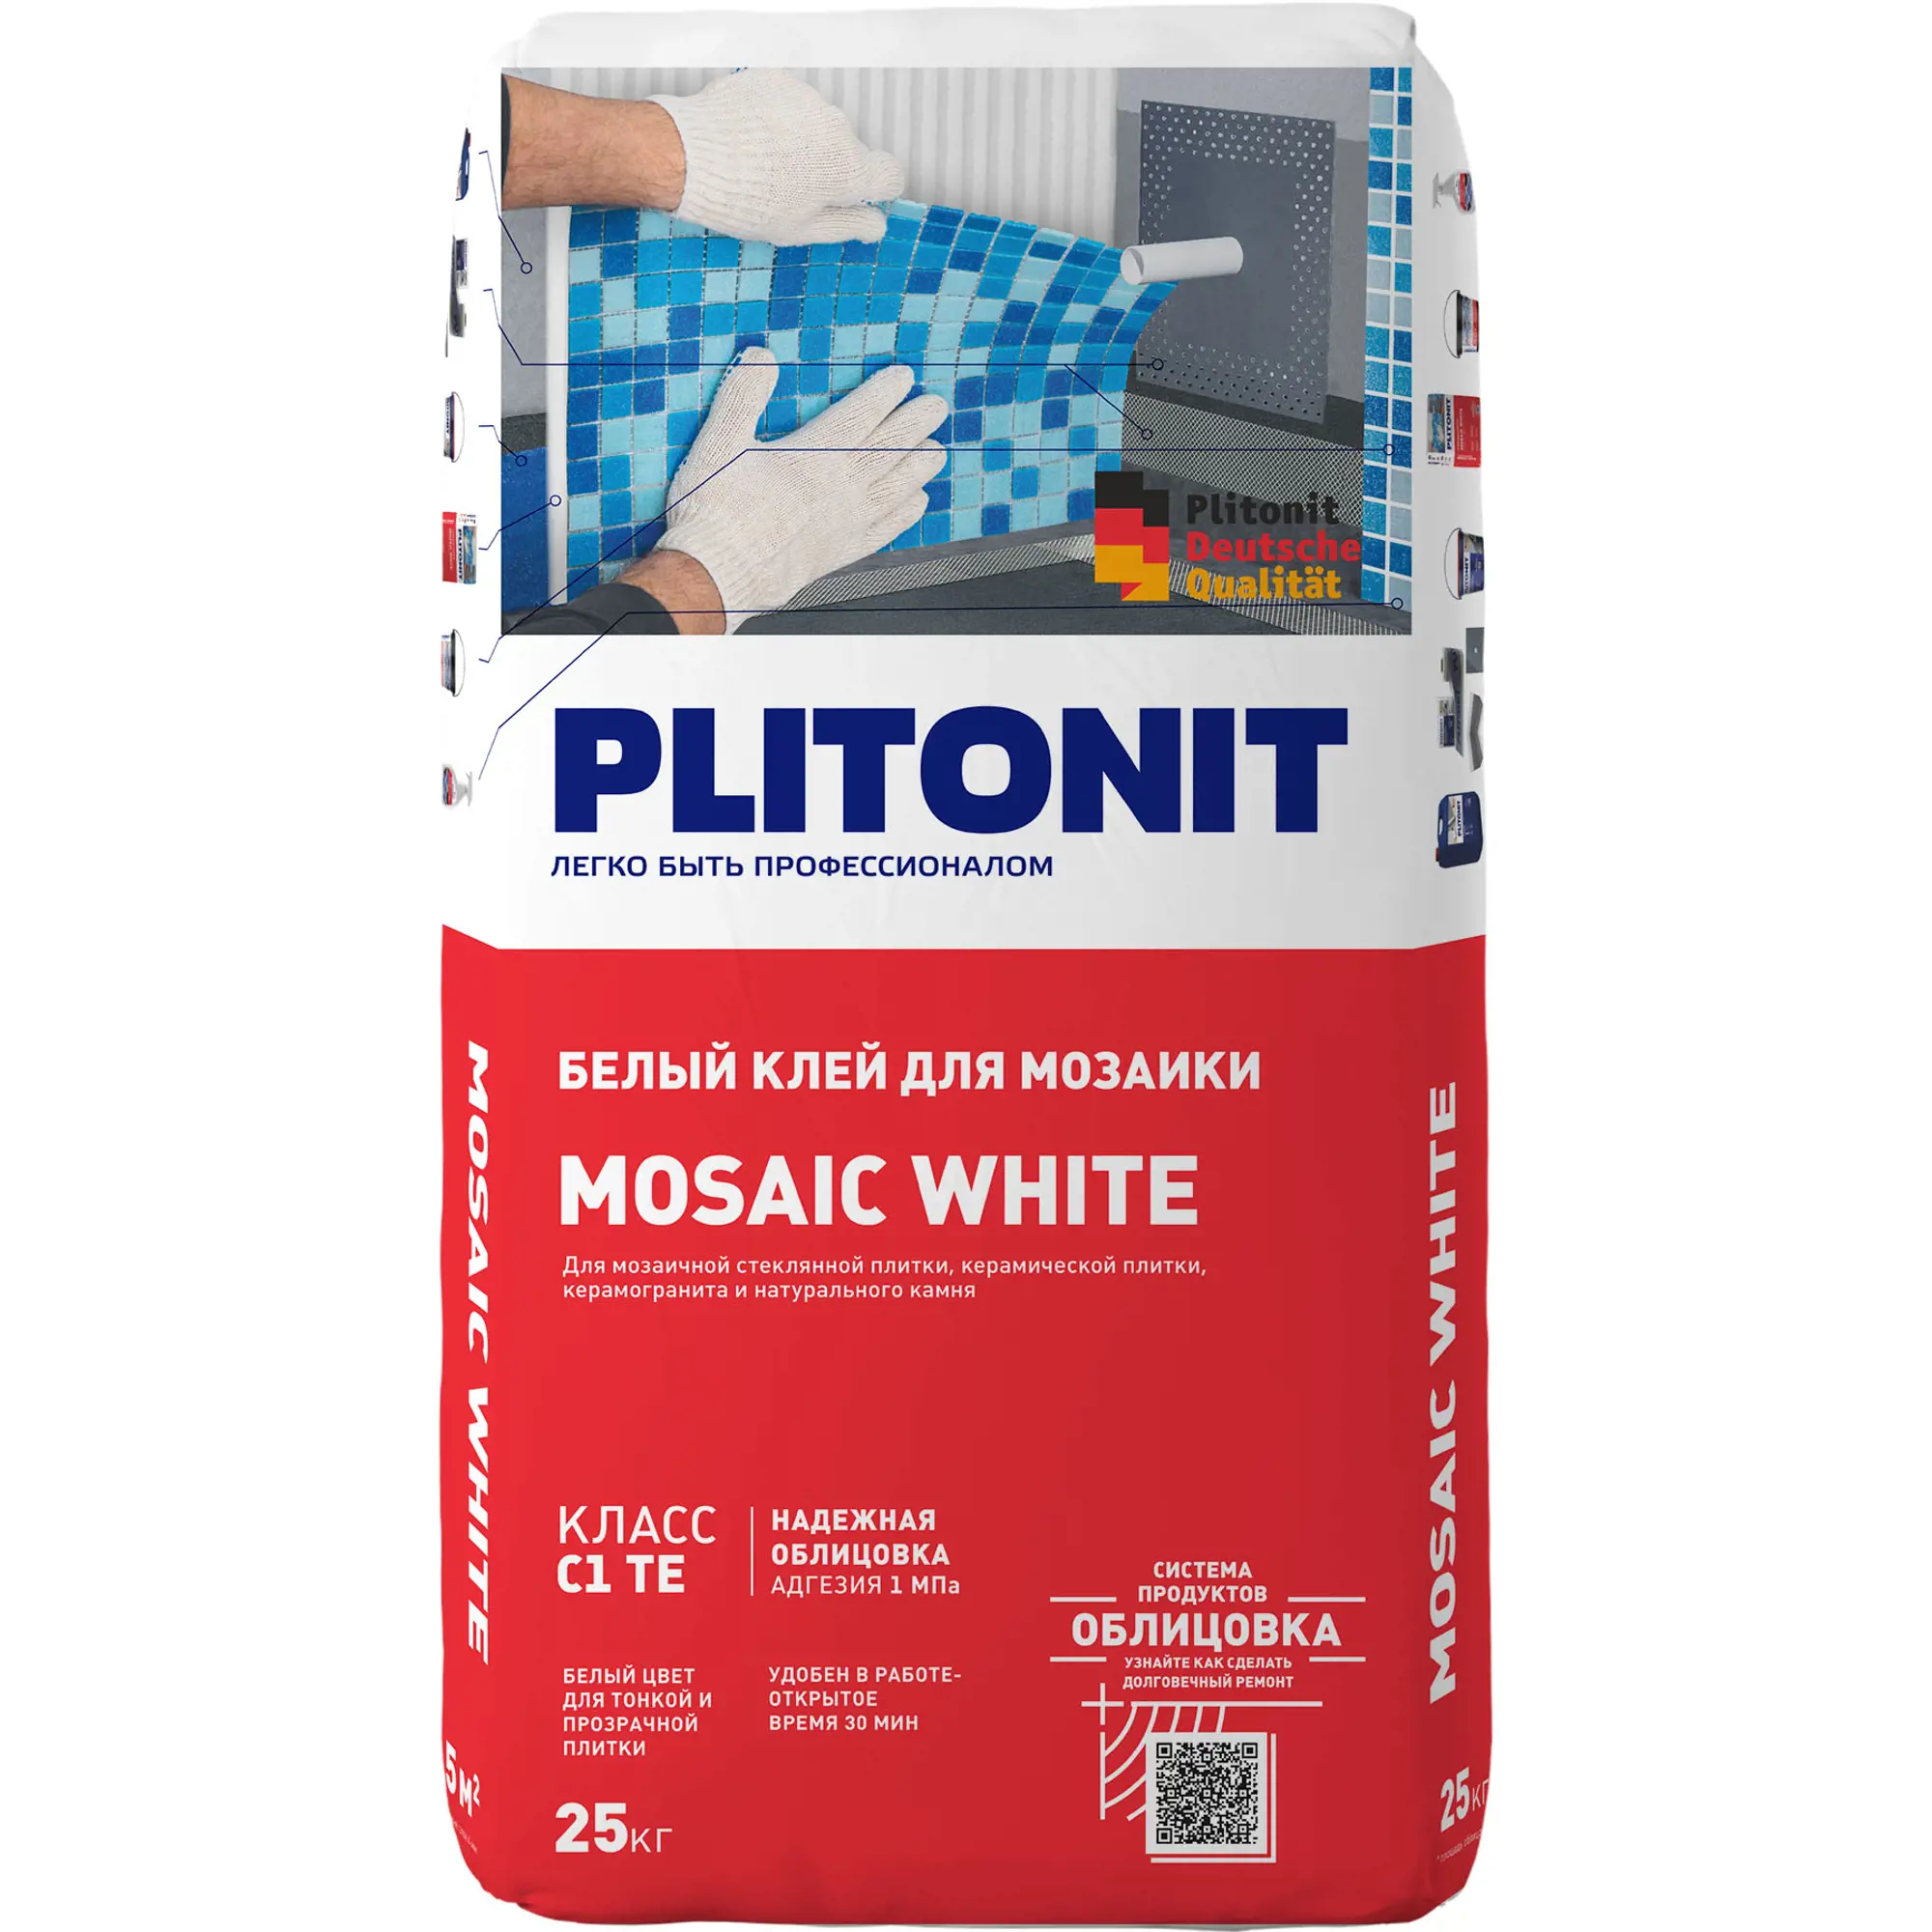 Клей для плитки PLITONIT Mosaik белый, 25 кг